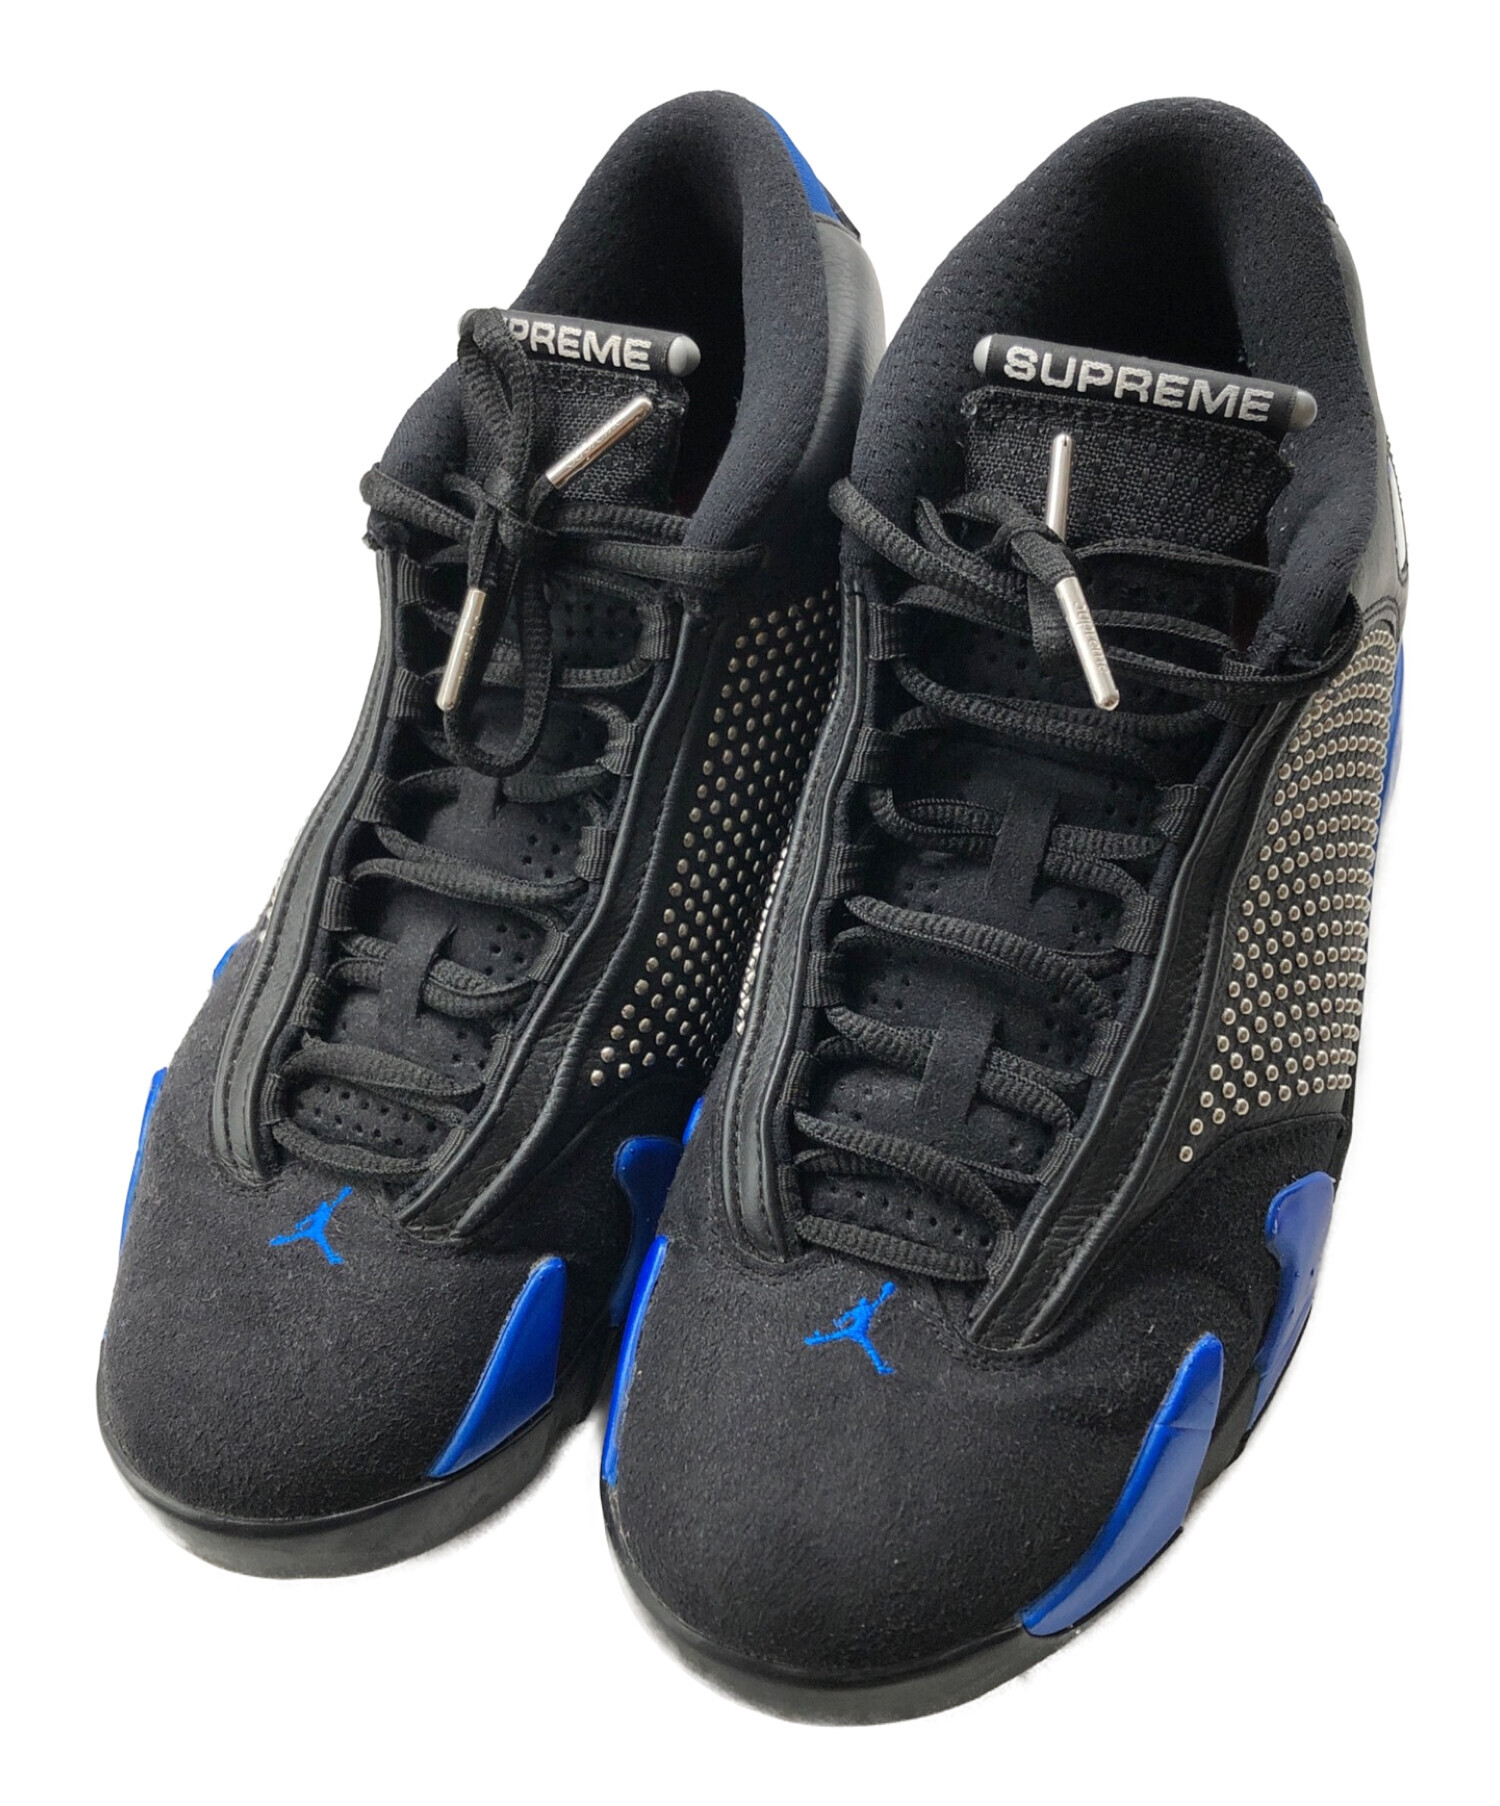 Supreme®/Nike® Air Jordan 14 BLACK  27.0